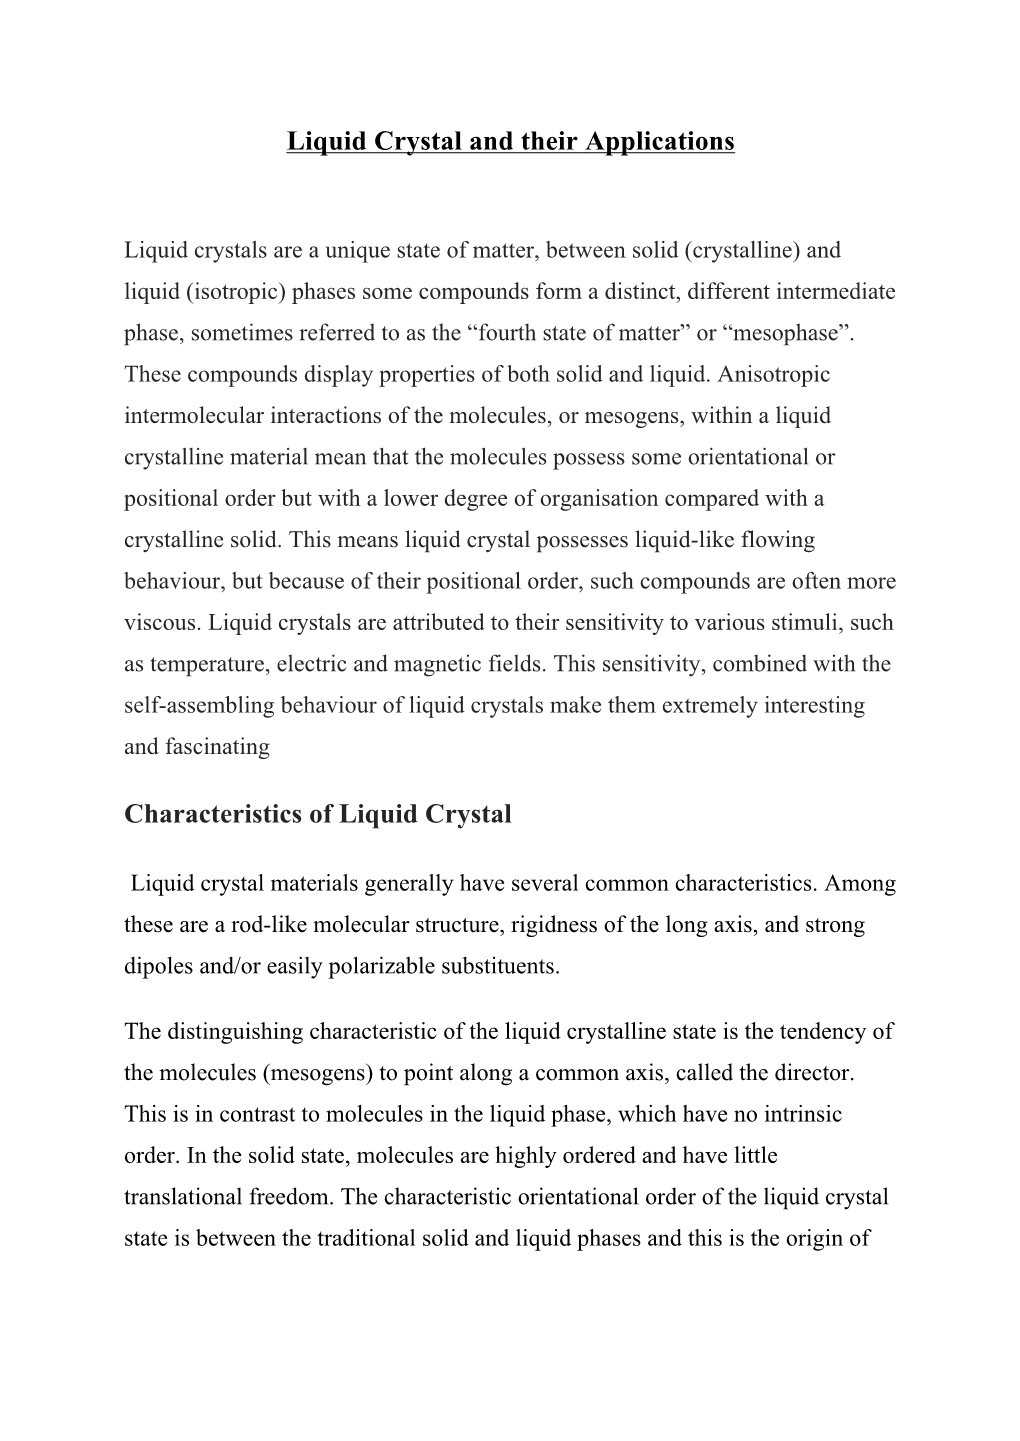 Application of Liquid Crystals